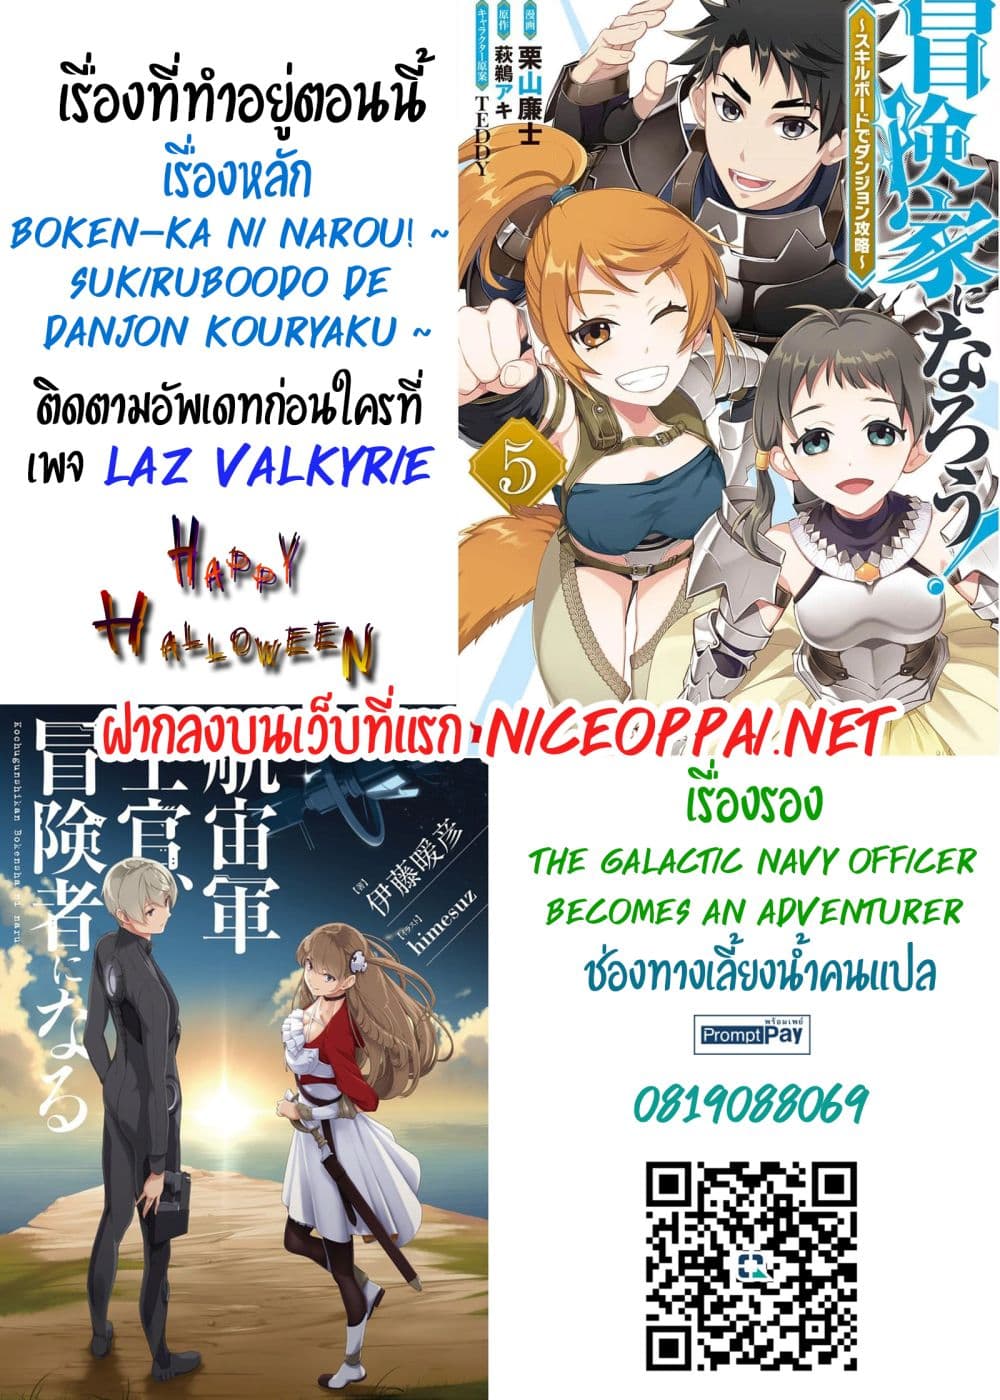 Boken-ka ni Narou! ~ Sukiruboodo de Danjon Kouryaku ~ 33-33